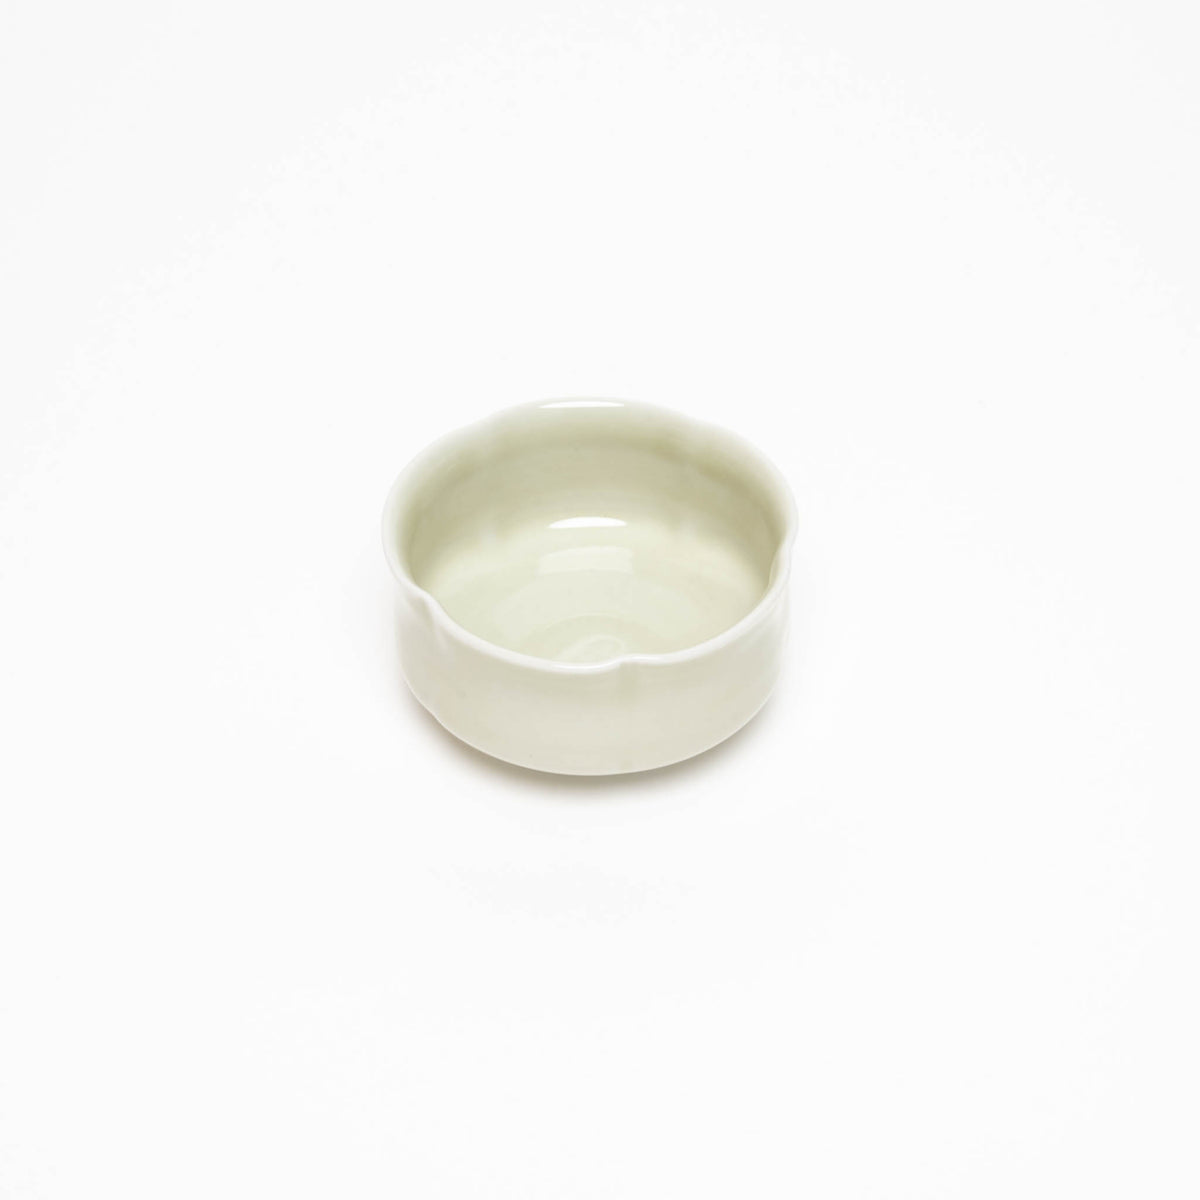 Natural porcelain celadon bowls star/flower shaped